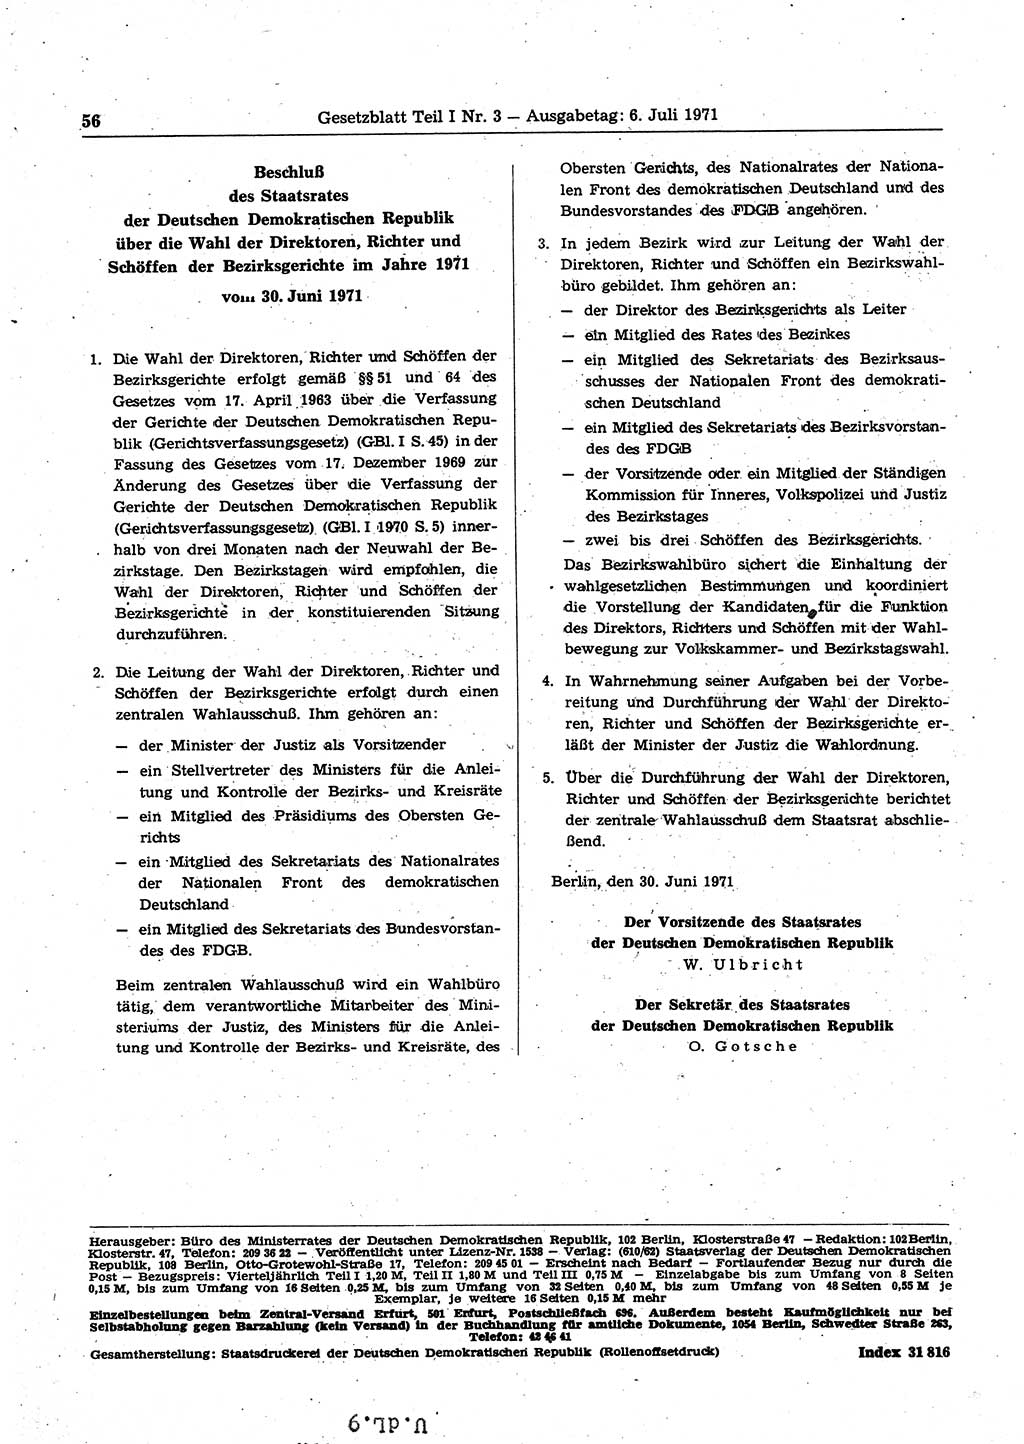 Gesetzblatt (GBl.) der Deutschen Demokratischen Republik (DDR) Teil Ⅰ 1971, Seite 56 (GBl. DDR Ⅰ 1971, S. 56)